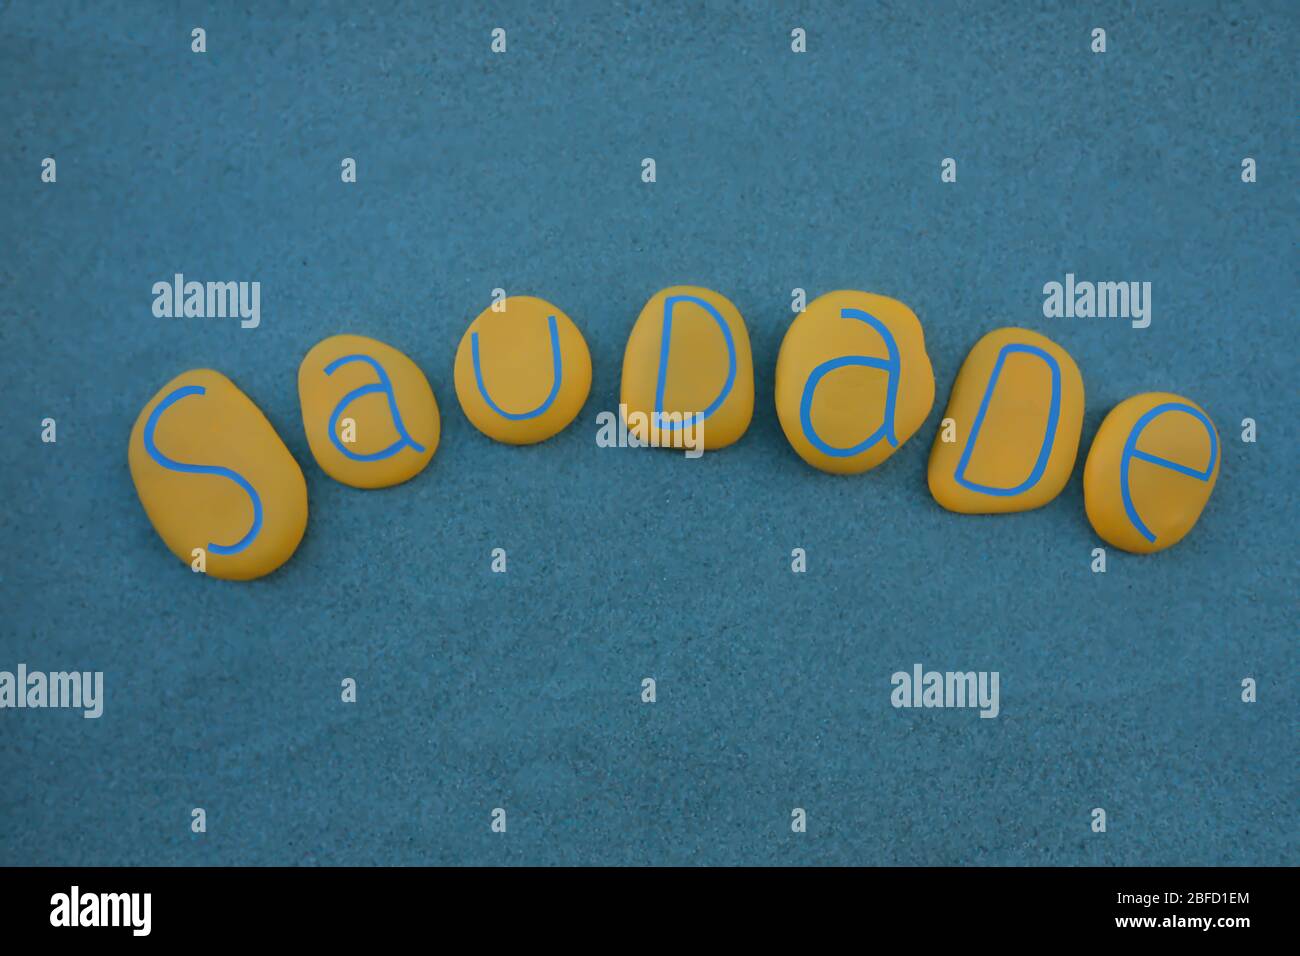 Saudade, portugiesisches Wort, das Nostalgie oder Sehnsucht bedeutet, komponiert mit gelben Steinbuchstaben über grünem Sand Stockfoto